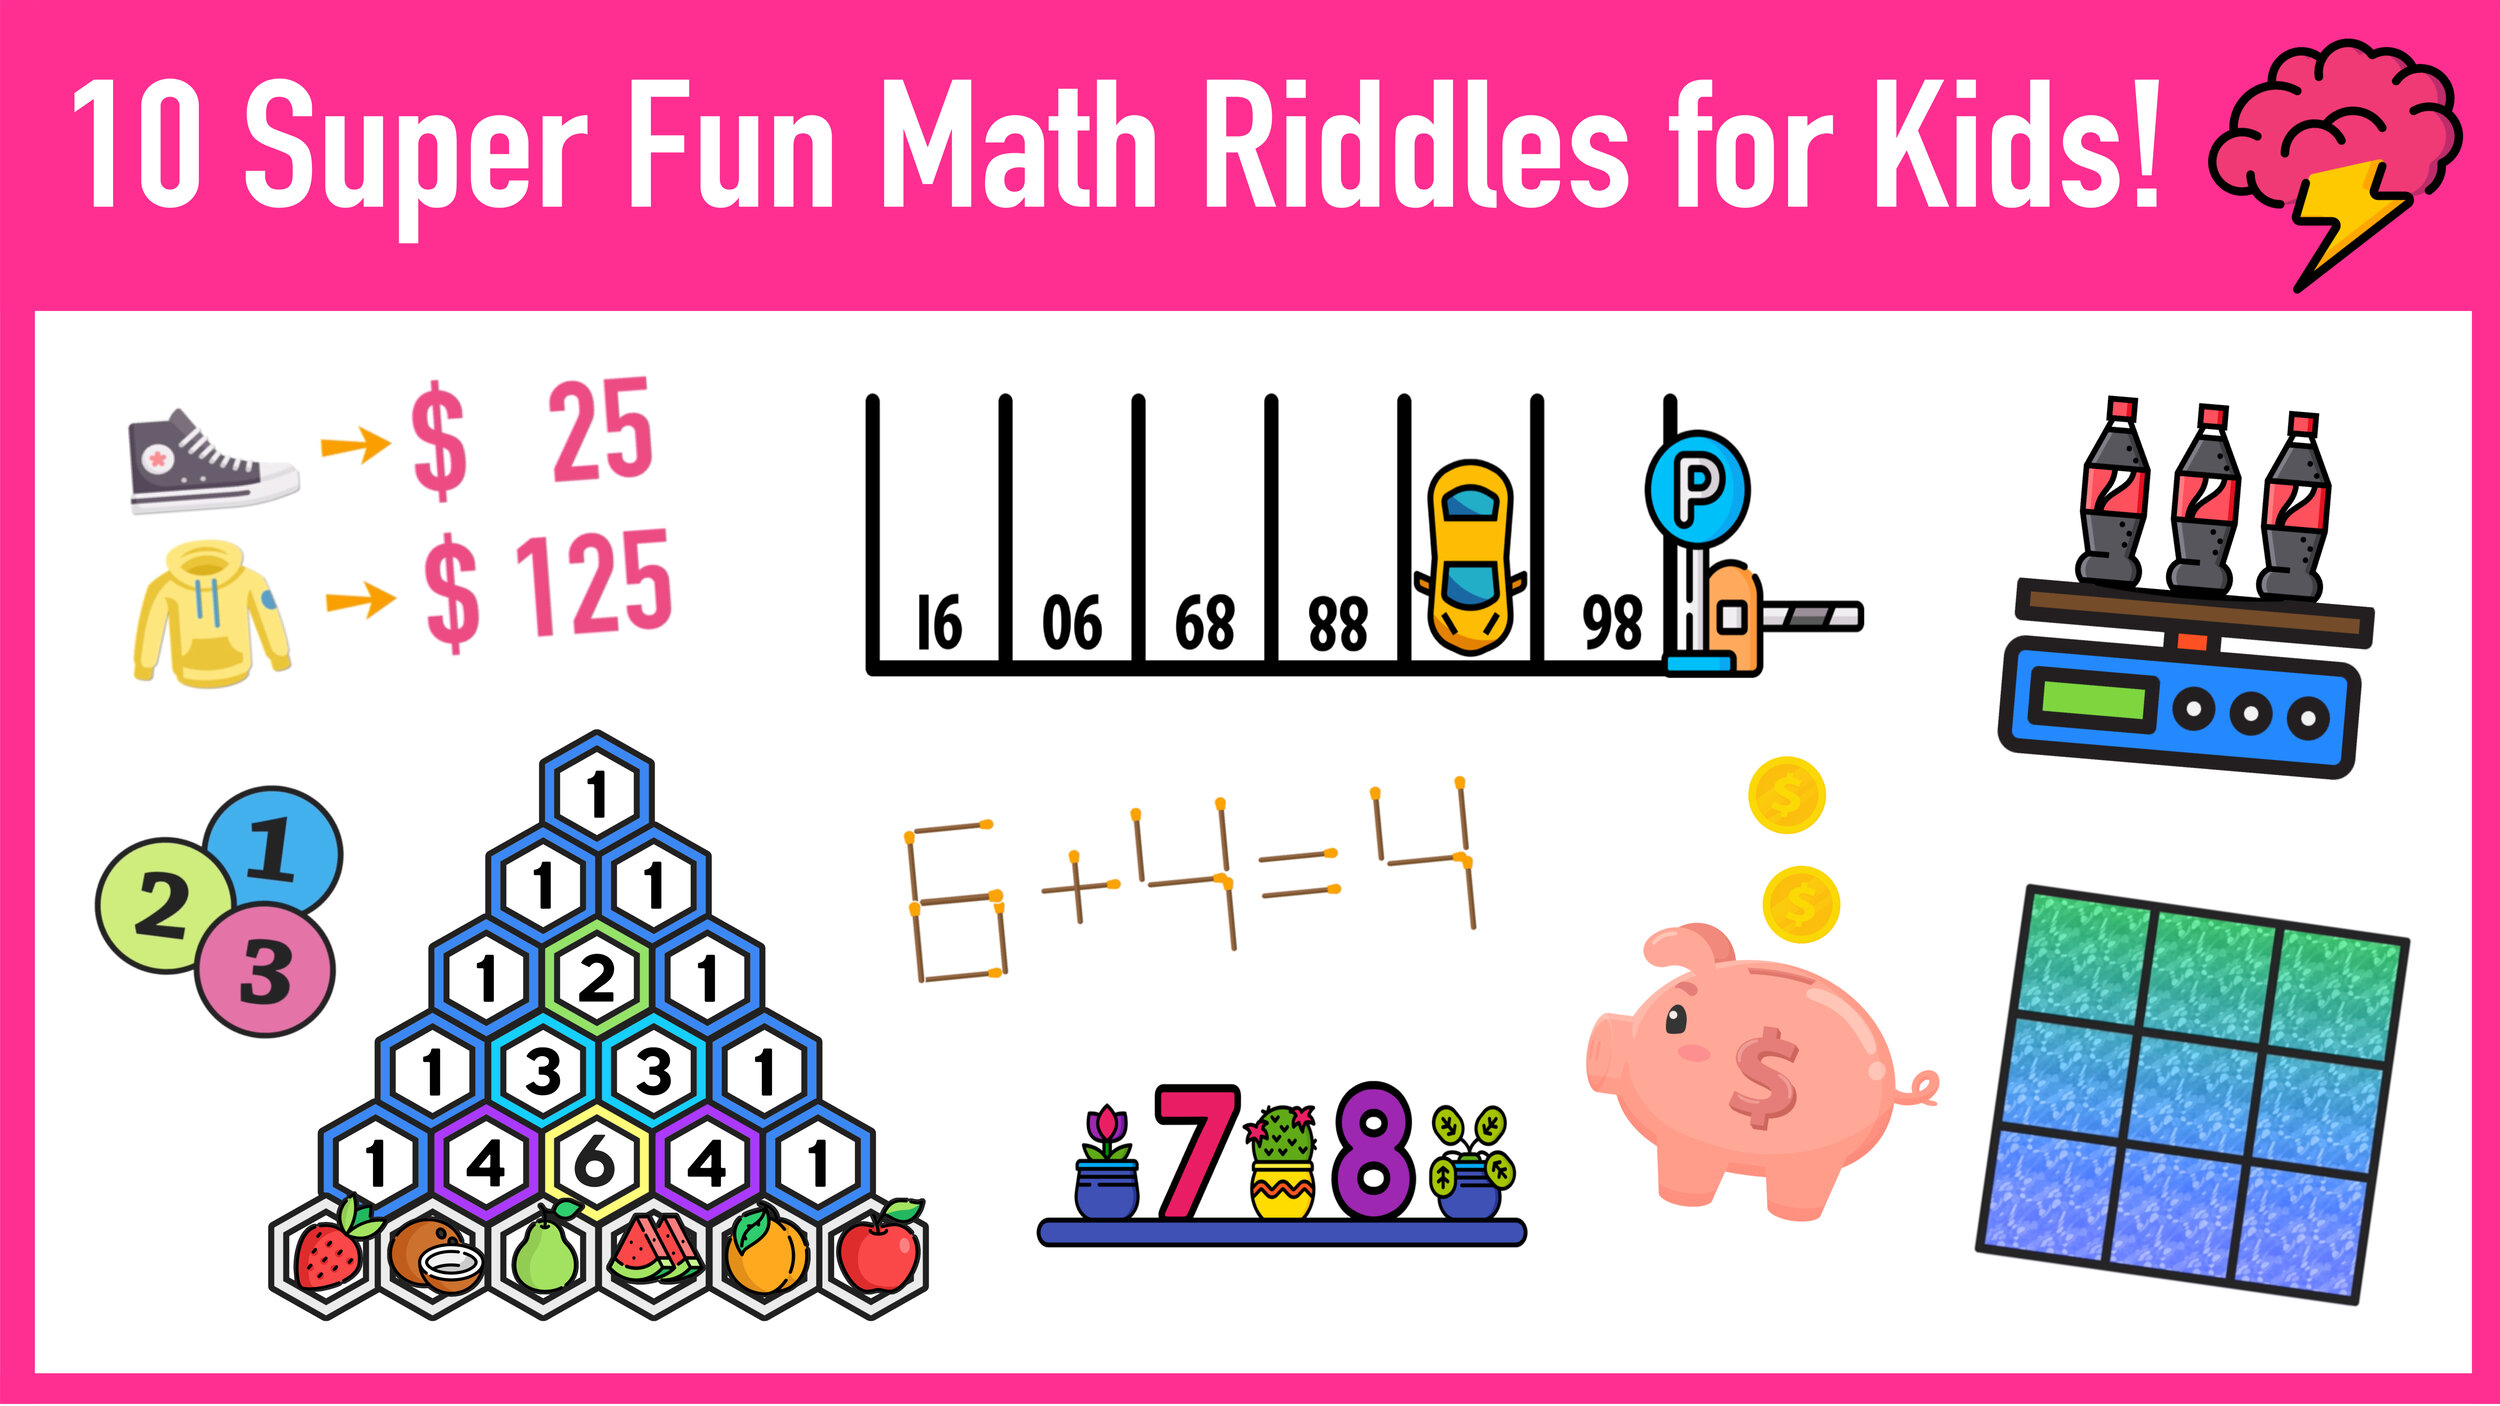 The Best (Free!) Multiplication Games For KS1 & KS2 Pupils